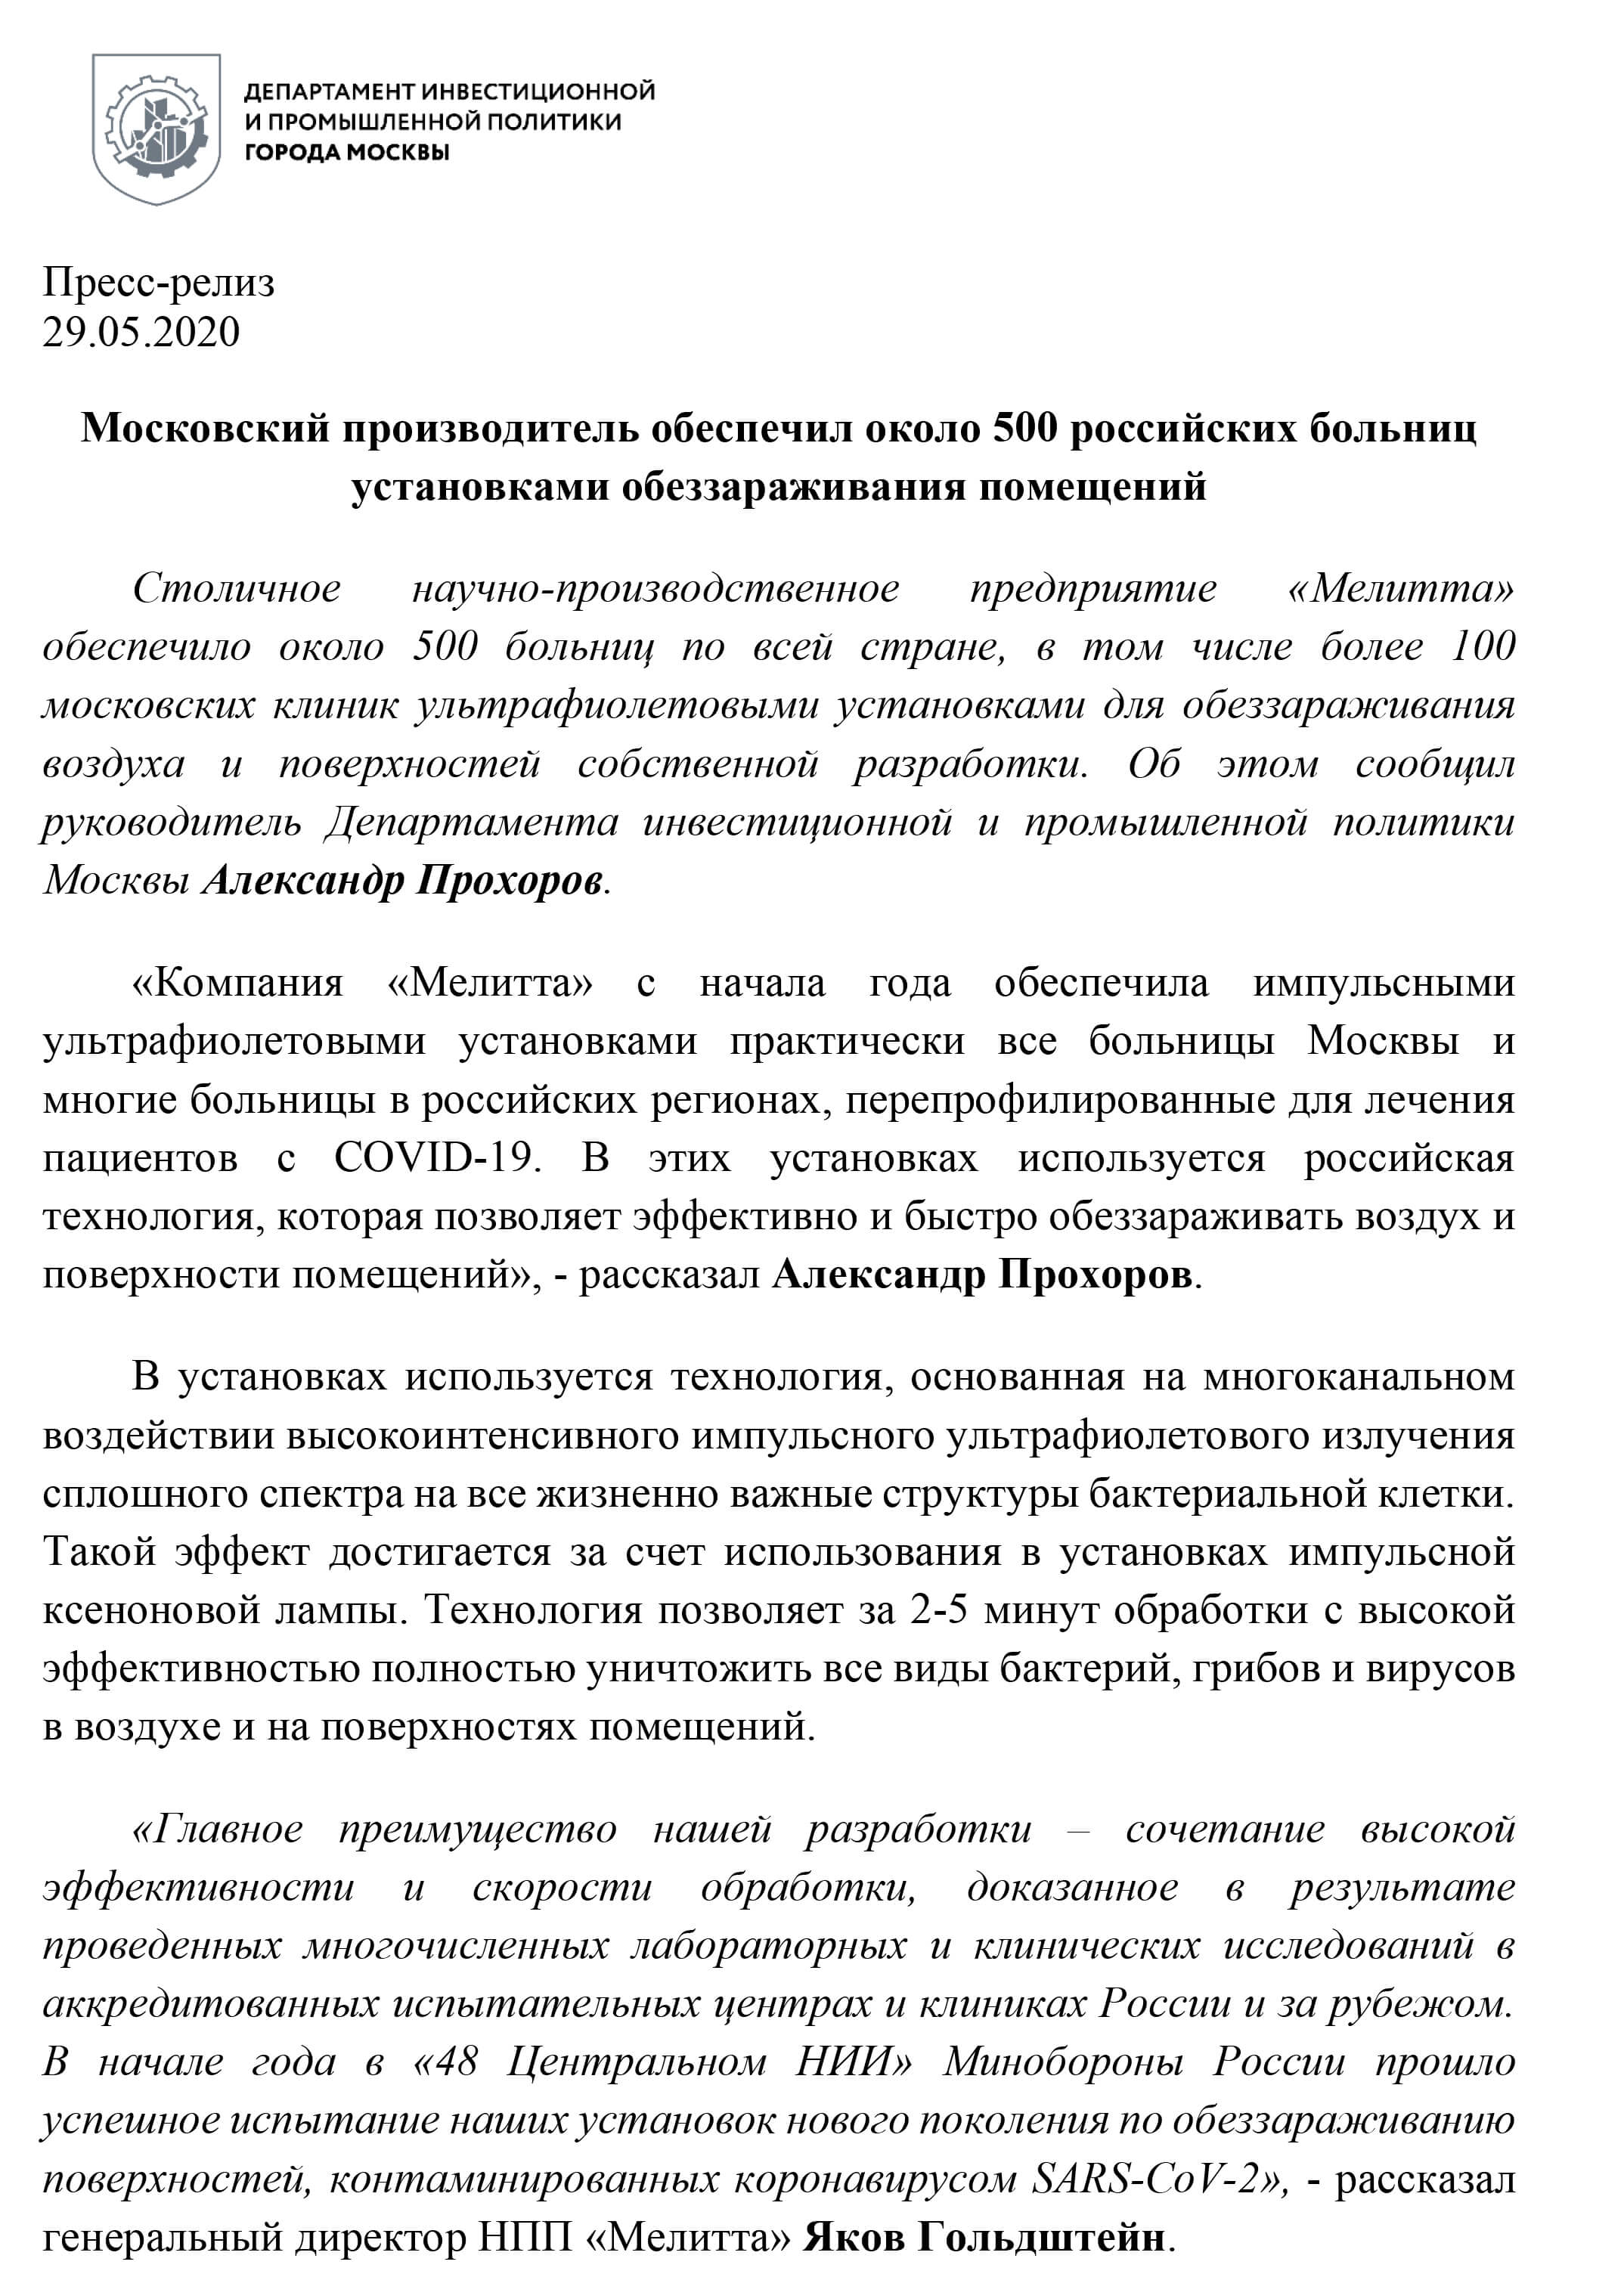 Пресс-релиз «Московский производитель обеспечил около 500 российских больниц установками обеззараживания помещений»